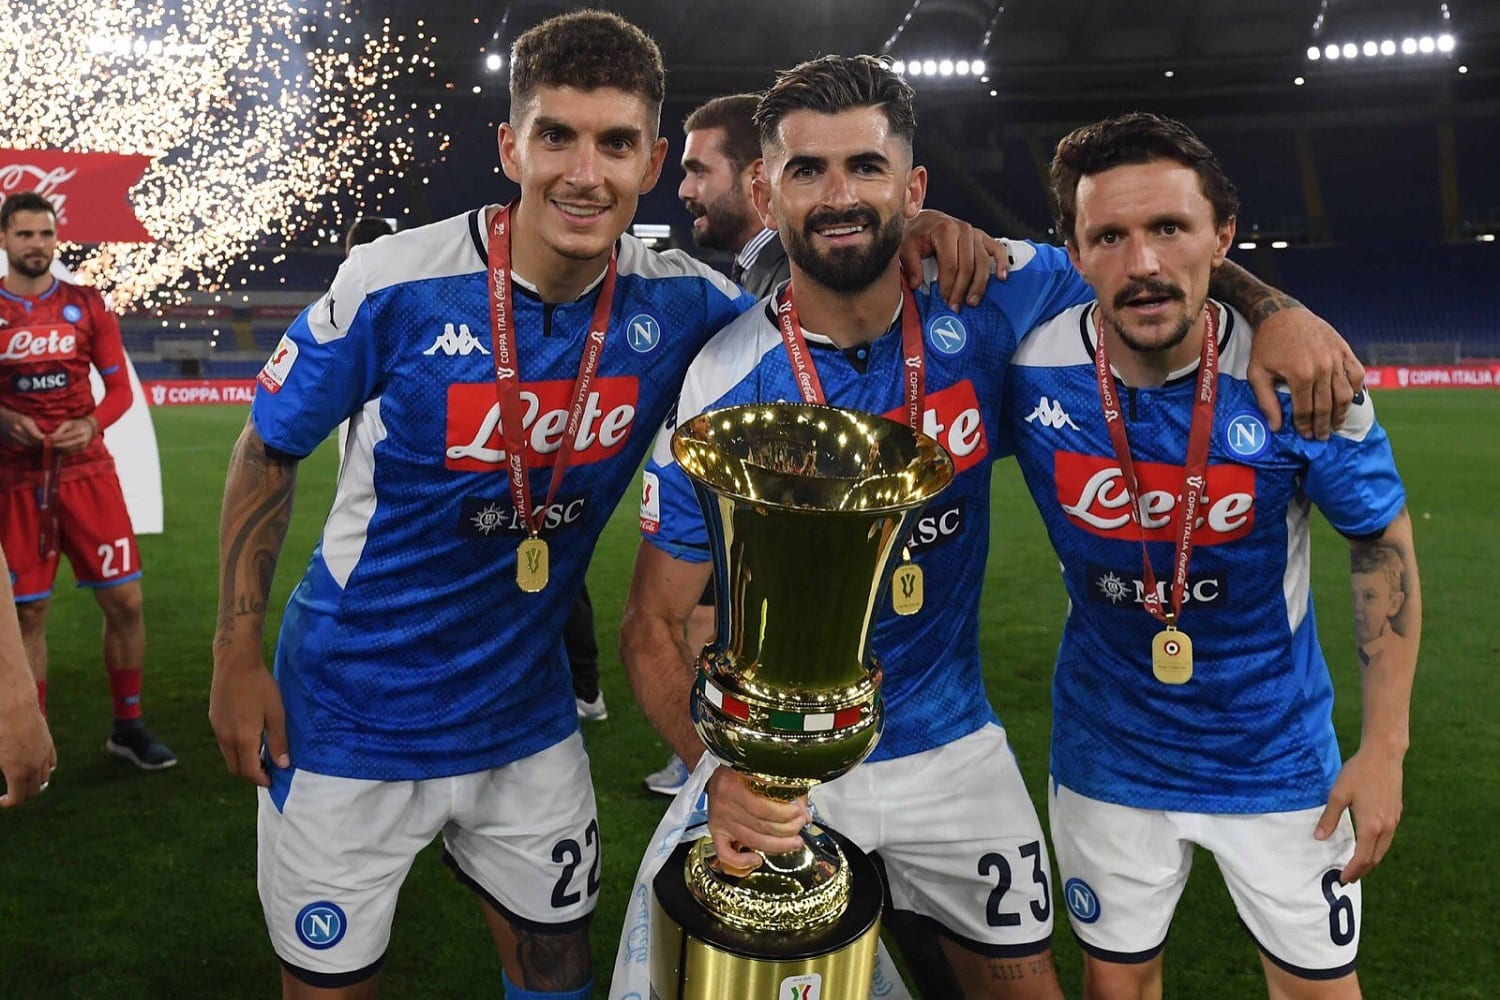 AscoltiTV 17 giugno 2020 · Dati Auditel del mercoledì: Finale di Coppa Italia col botto per Napoli-Juventus, tra la festa di una città e la delusione della Juventus